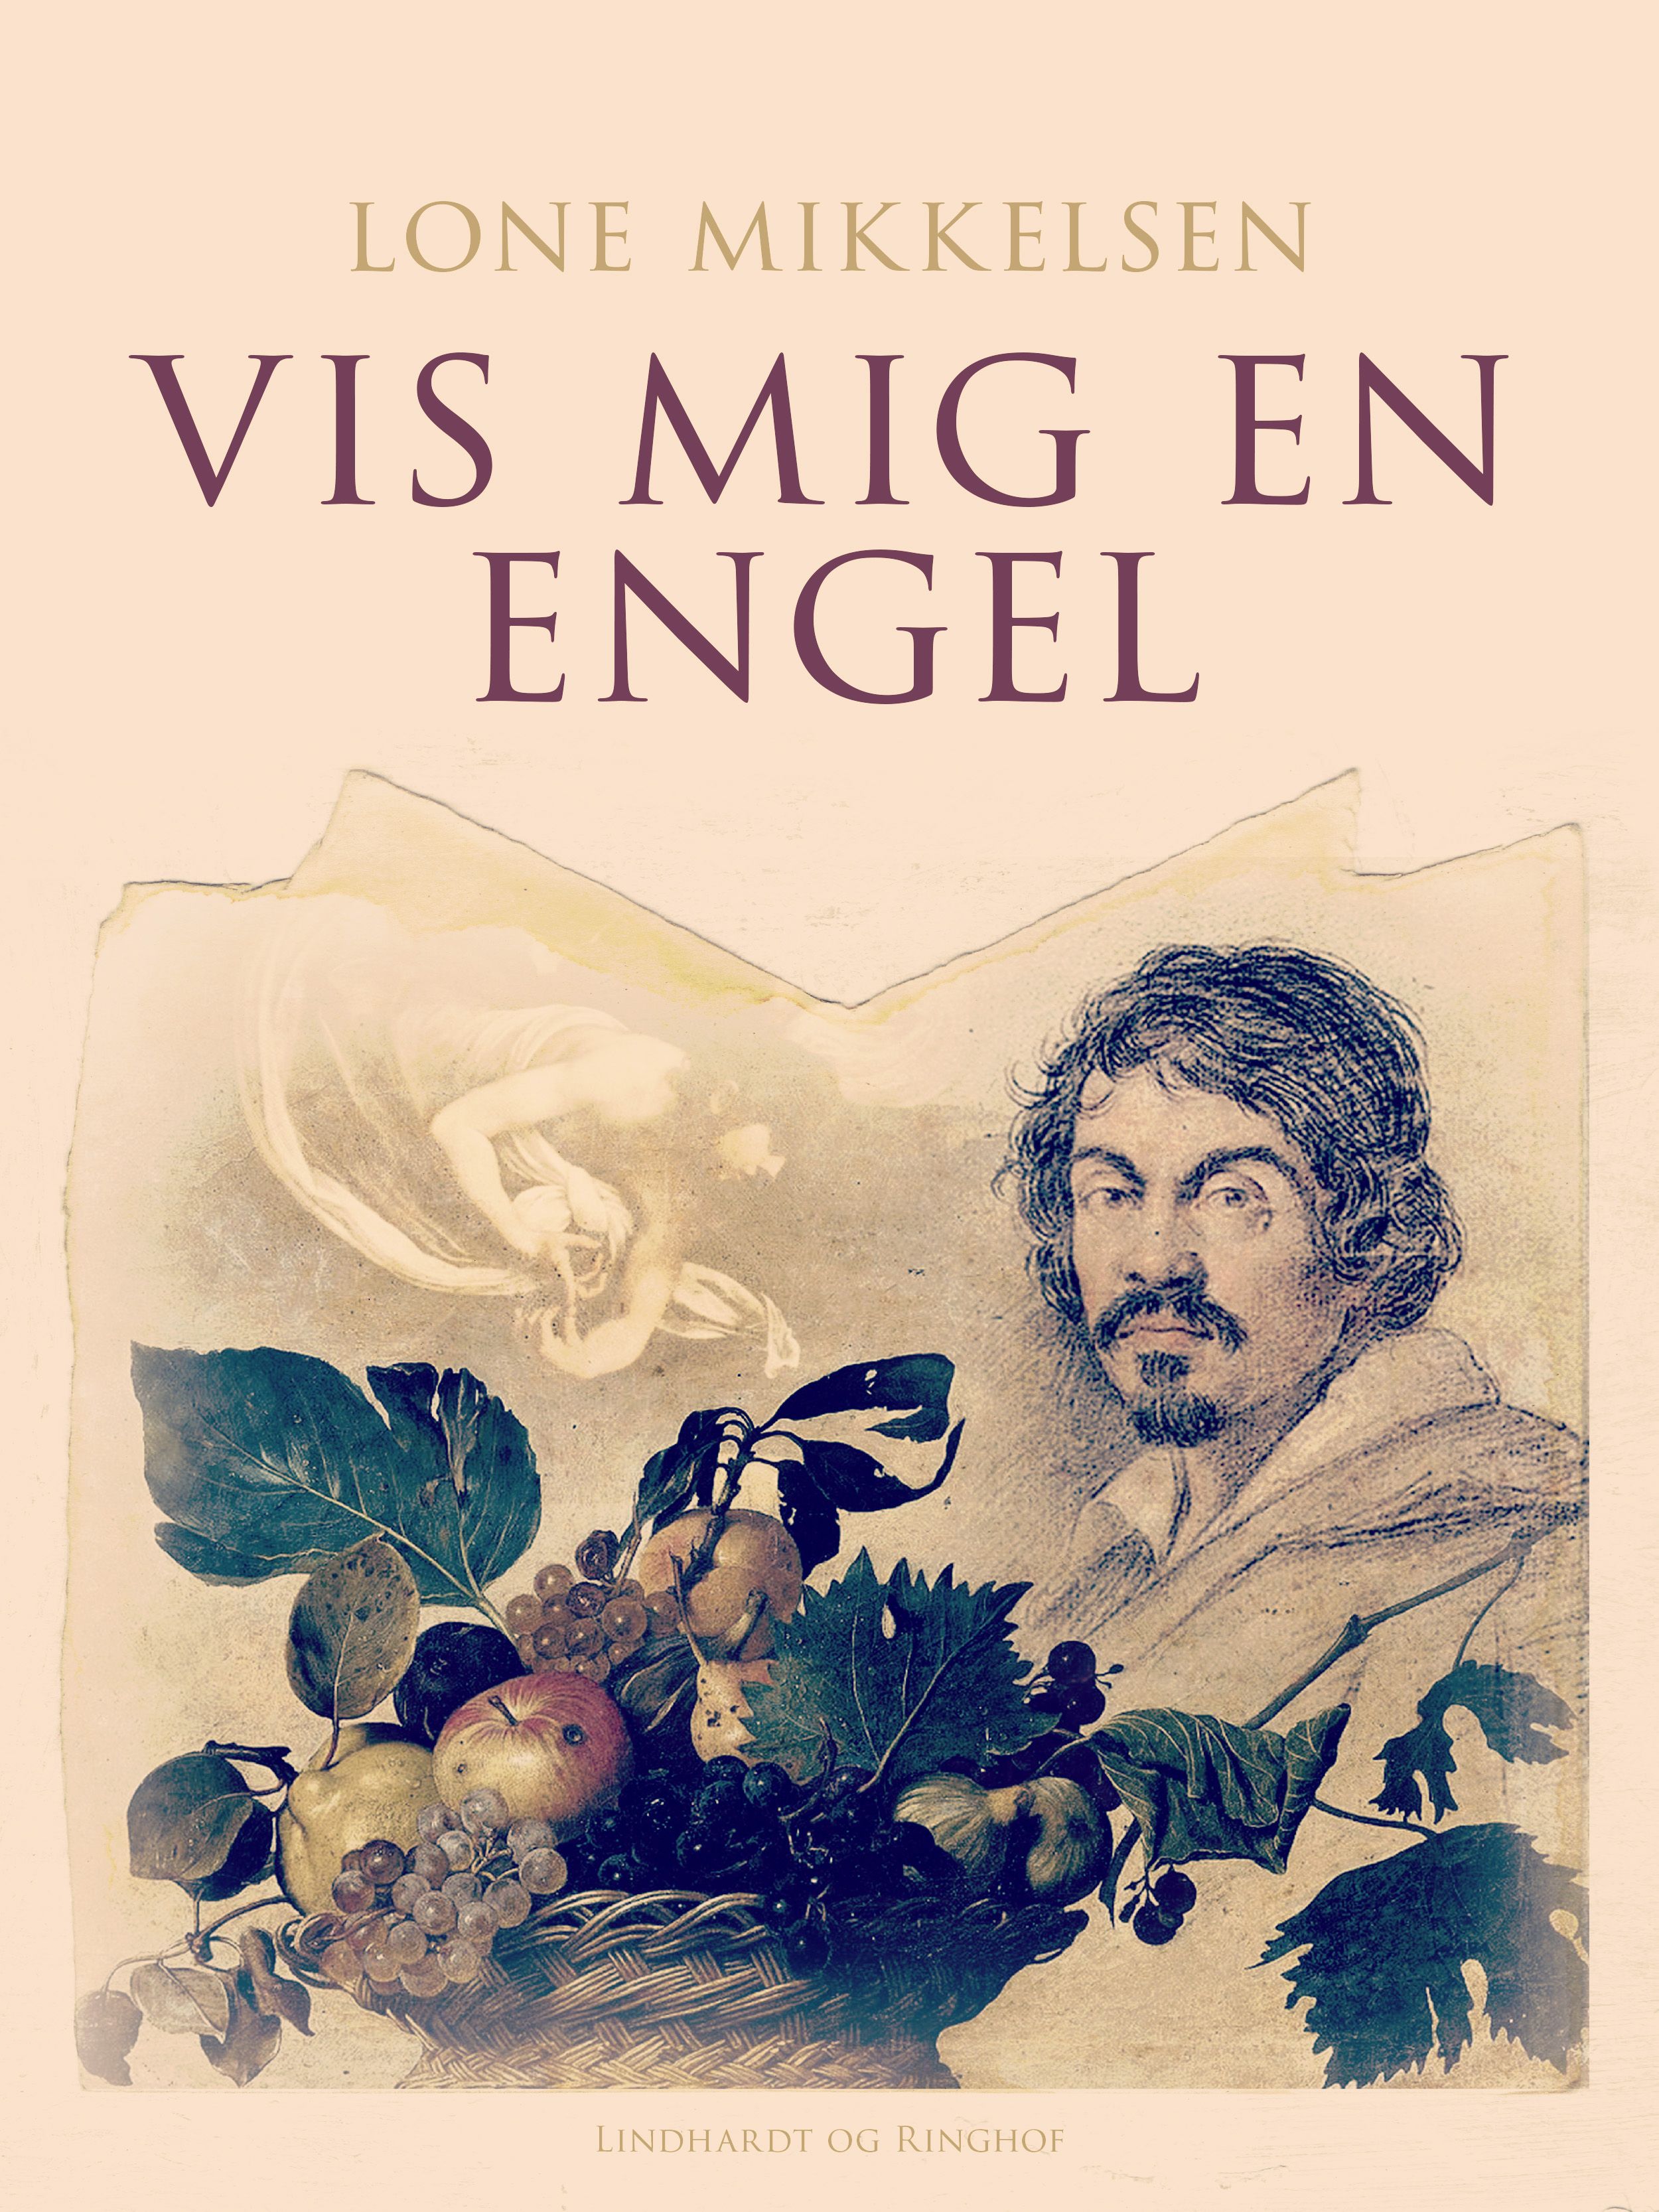 Vis mig en engel, eBook by Lone Mikkelsen